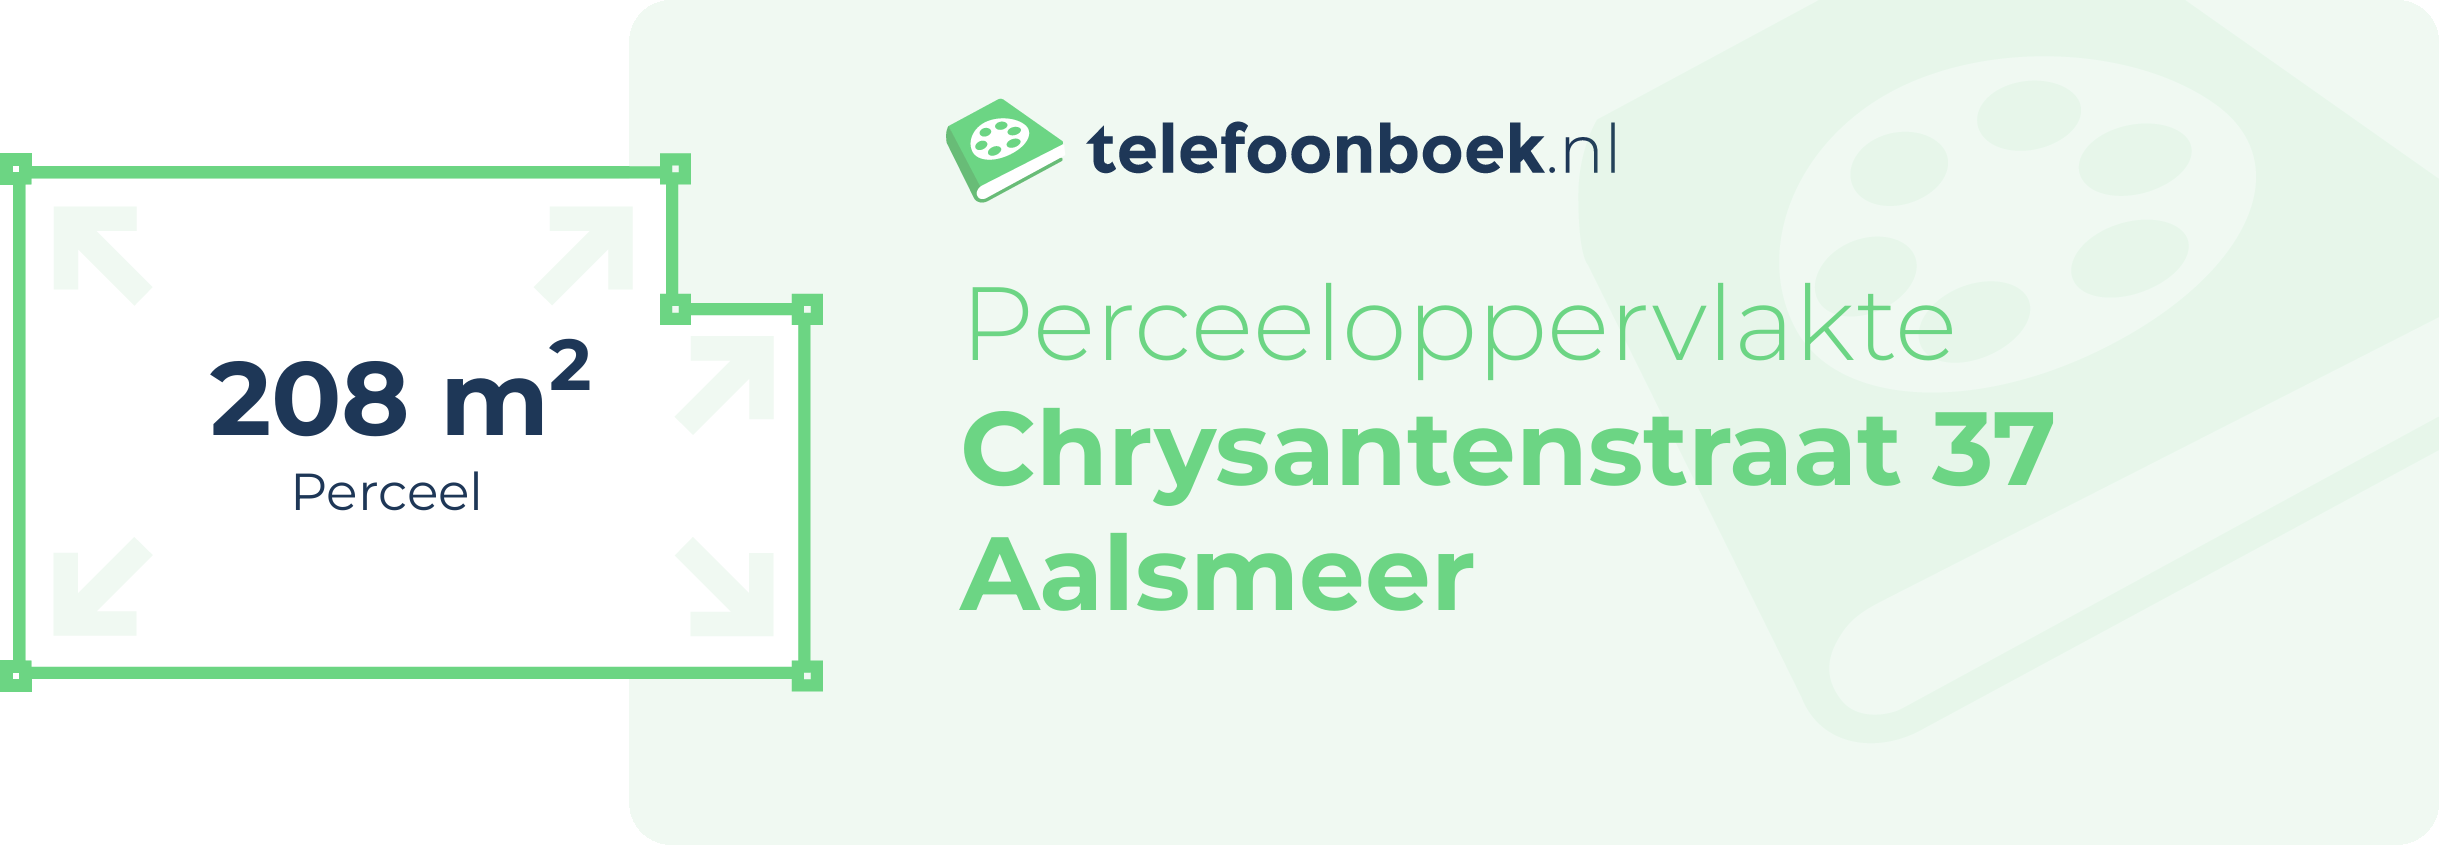 Perceeloppervlakte Chrysantenstraat 37 Aalsmeer